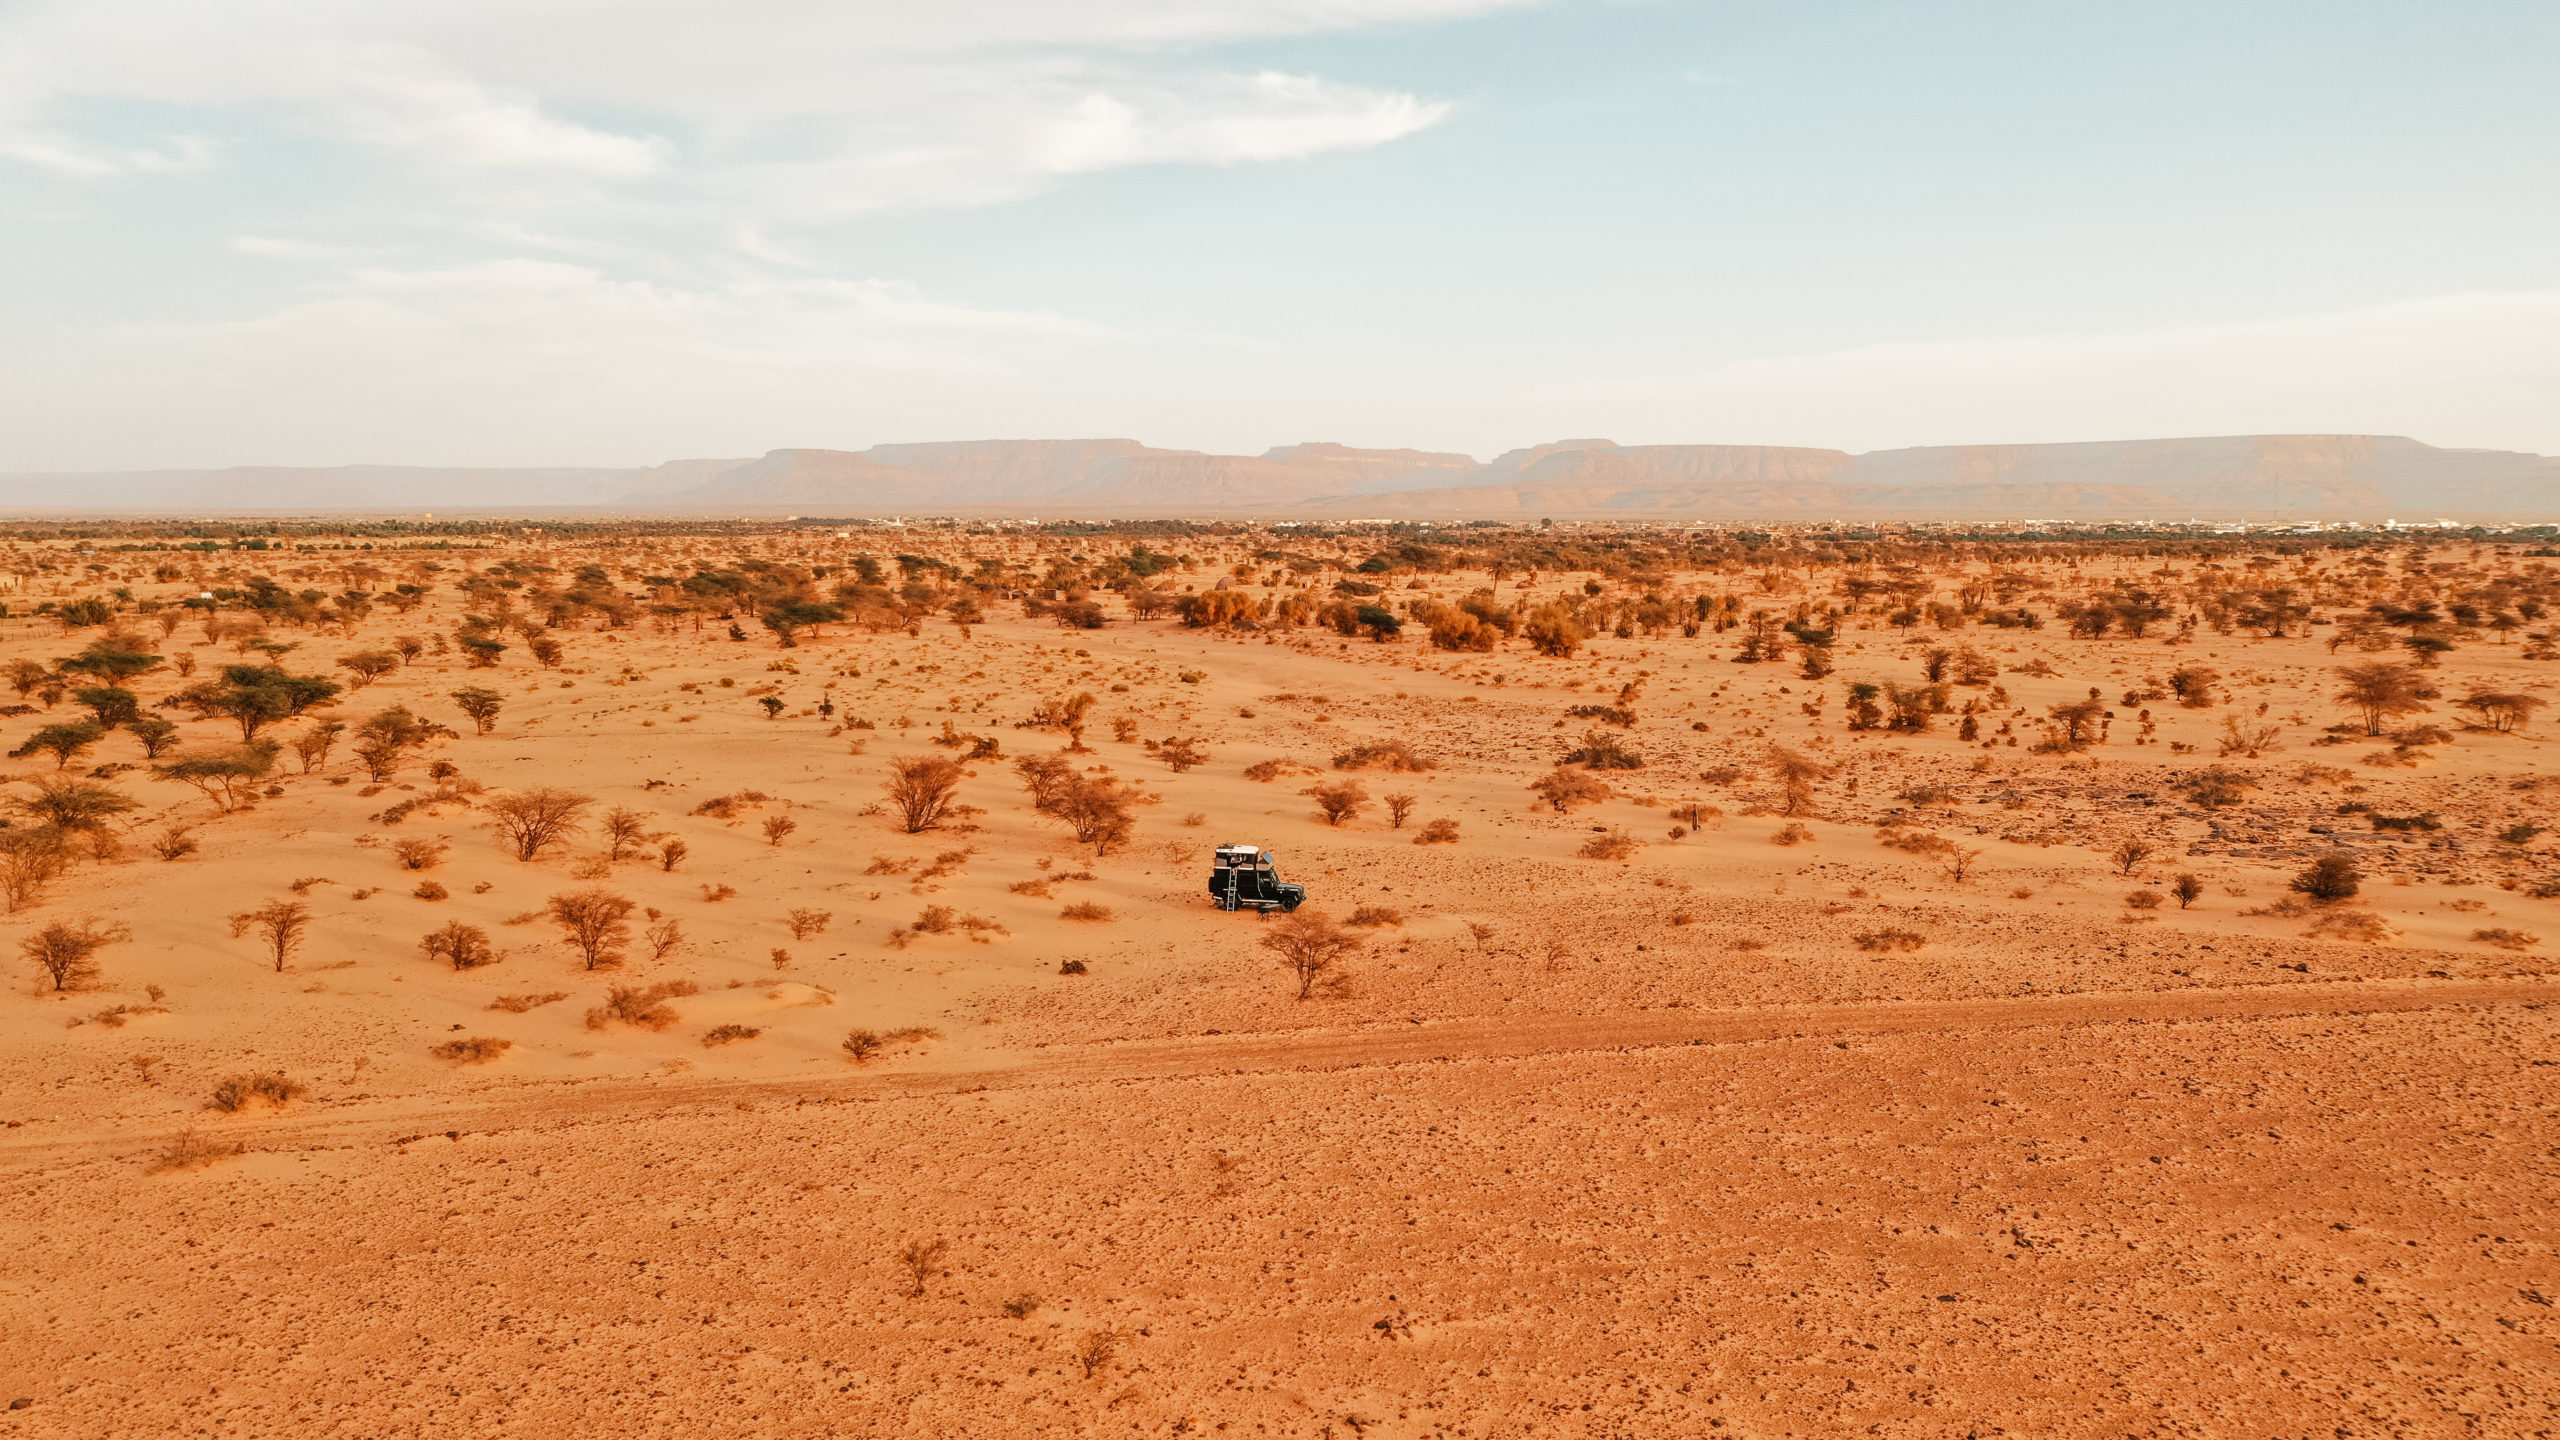 atar désert adrar mauritanie road trip blog